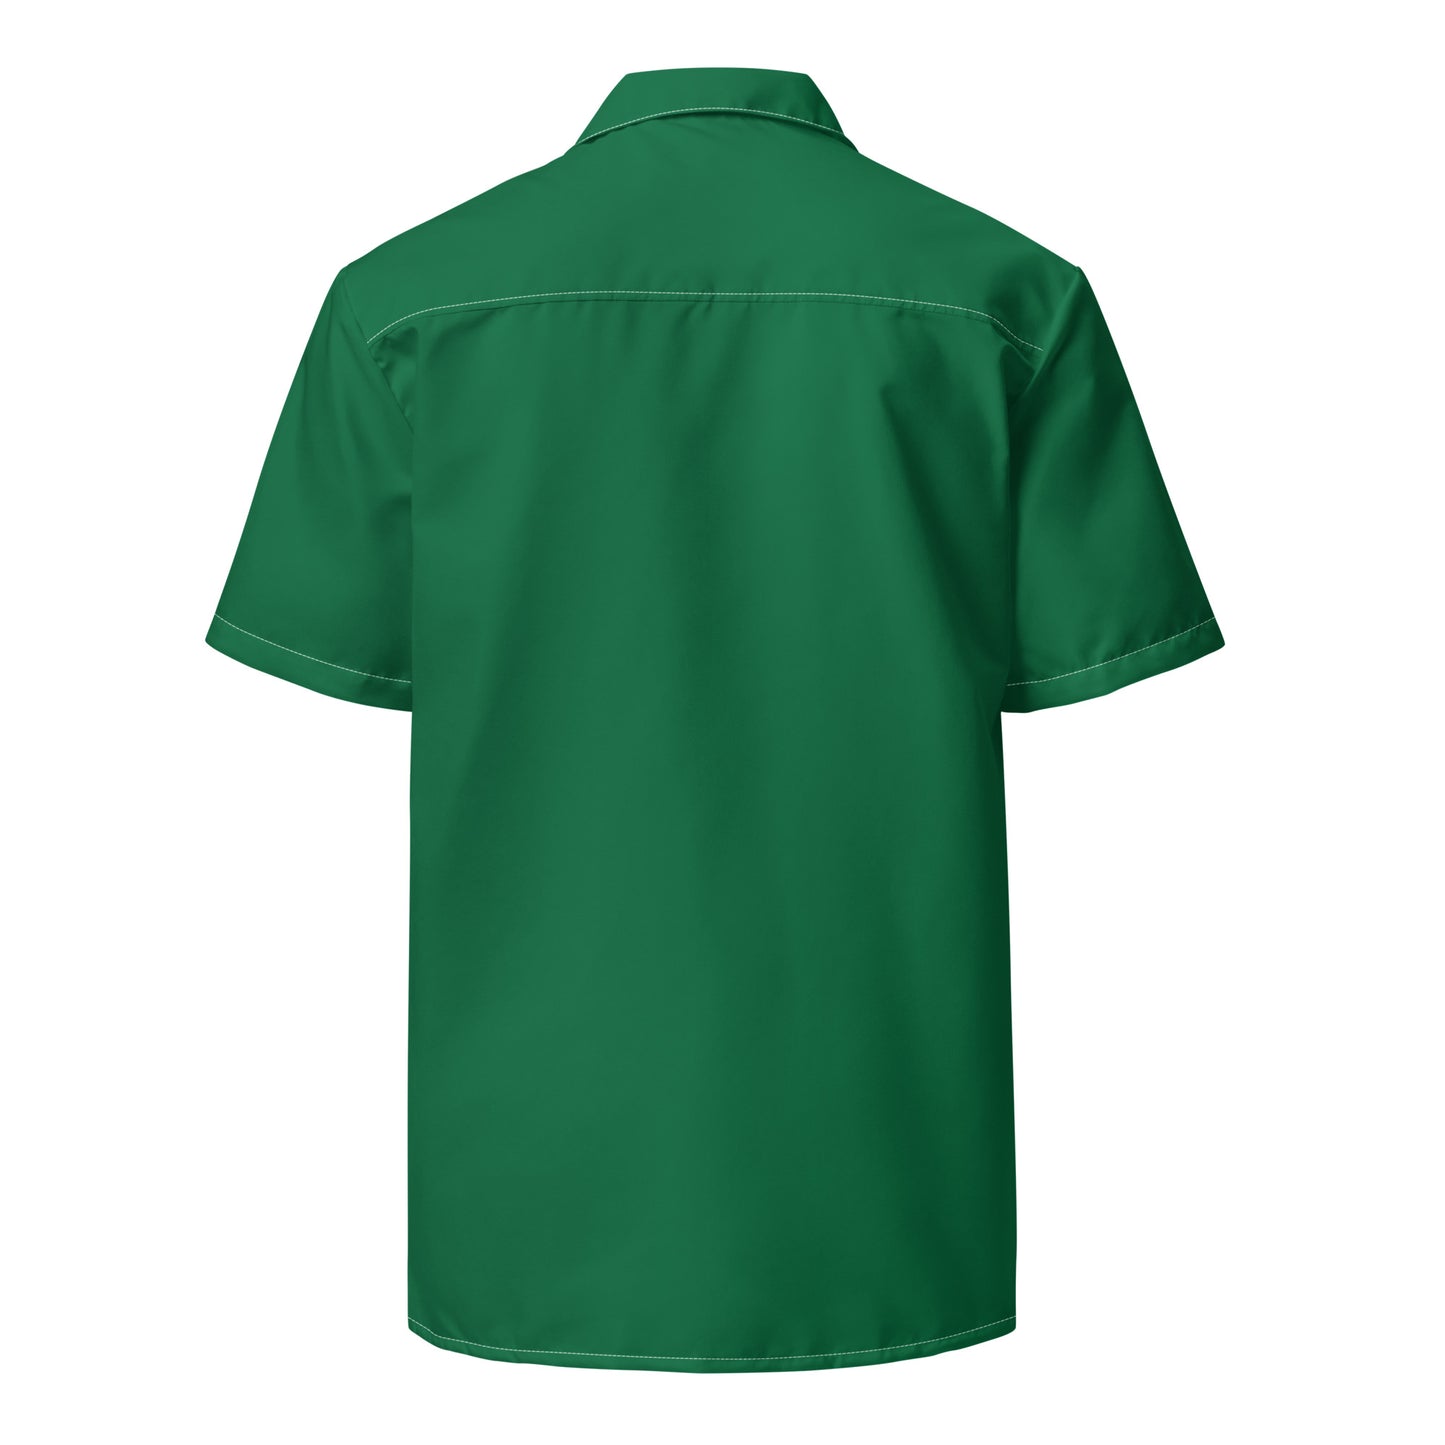 Unisex Green Peaceful button shirt